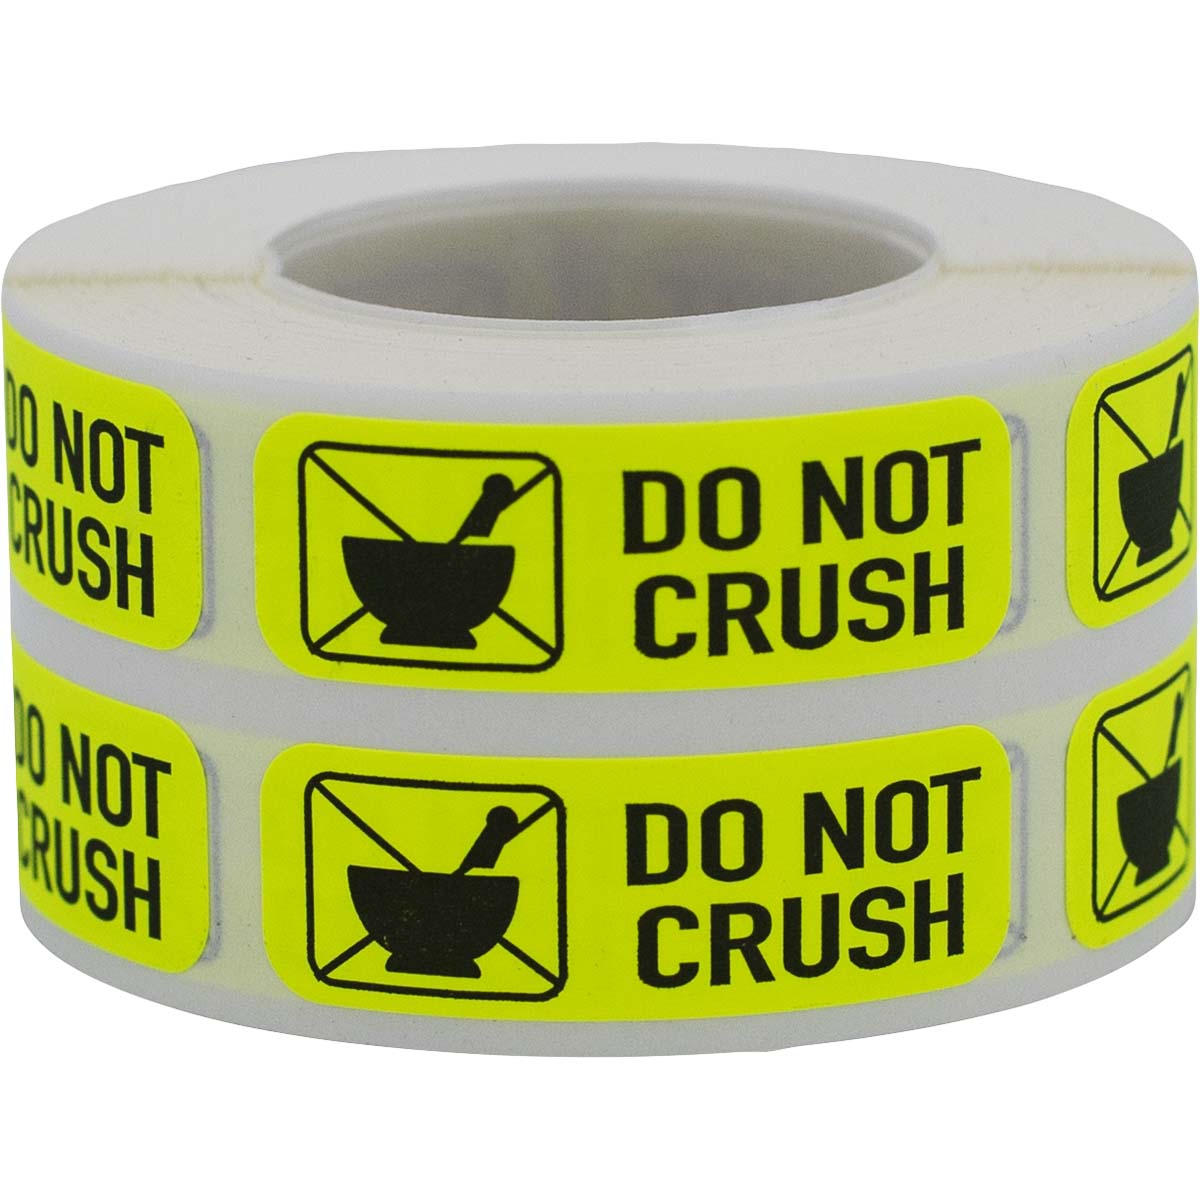 Do Not Crush Pharmacy Warning Labels